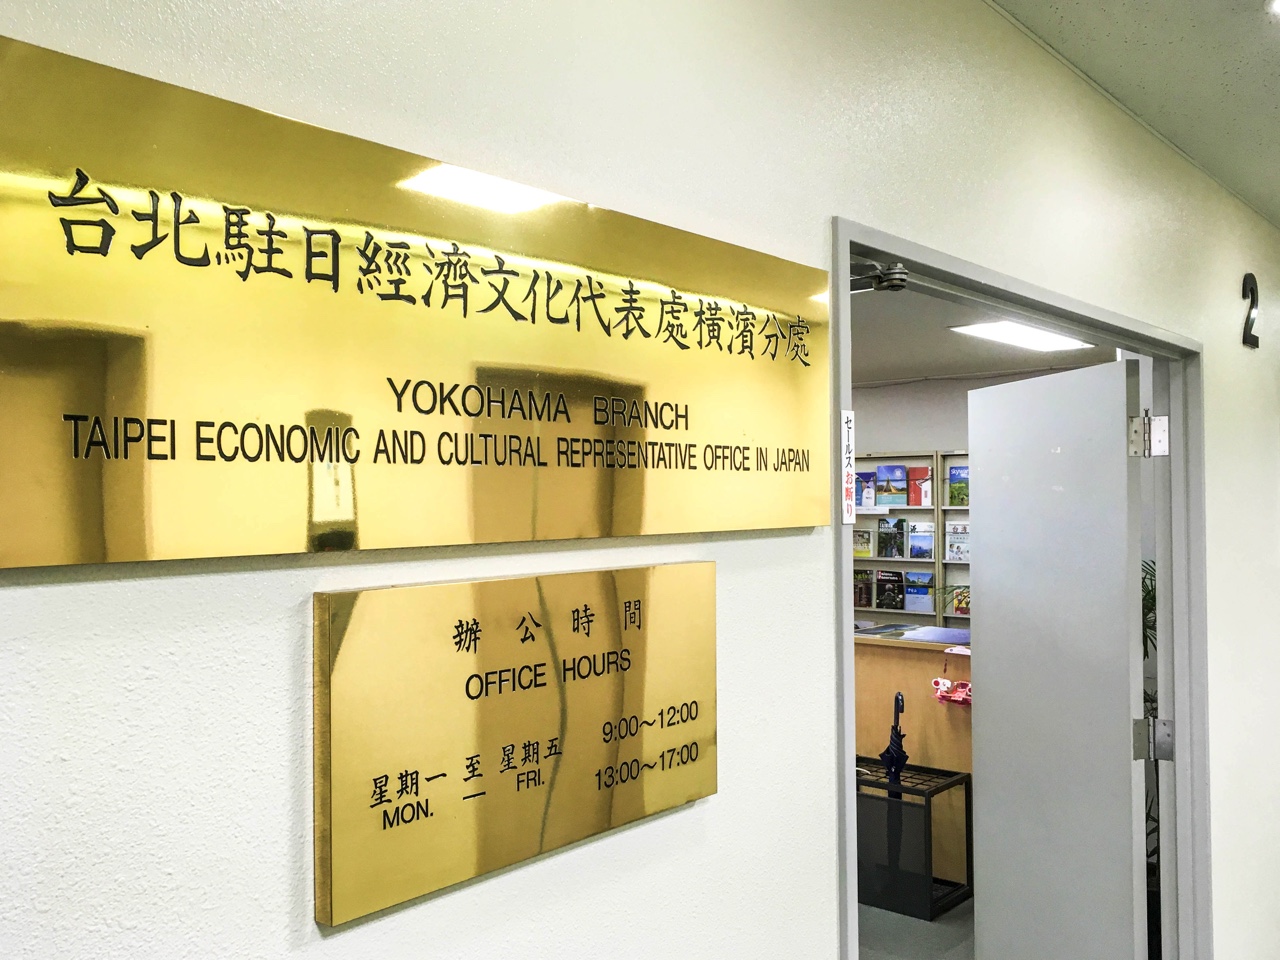 台北駐日經濟文化代表處入口